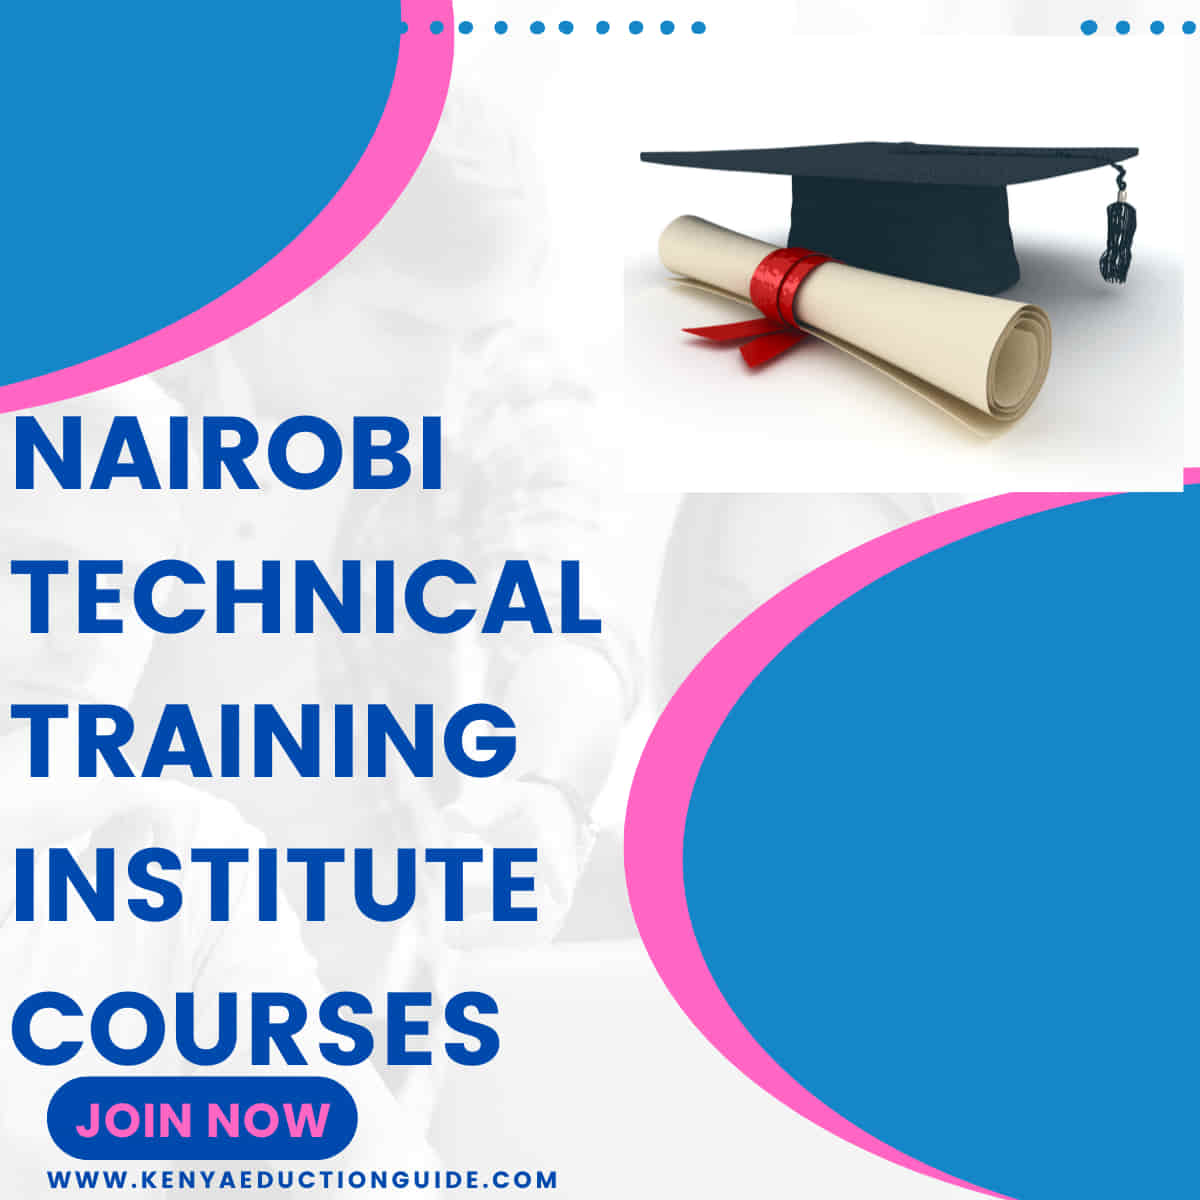 Nairobi technical training institute courses